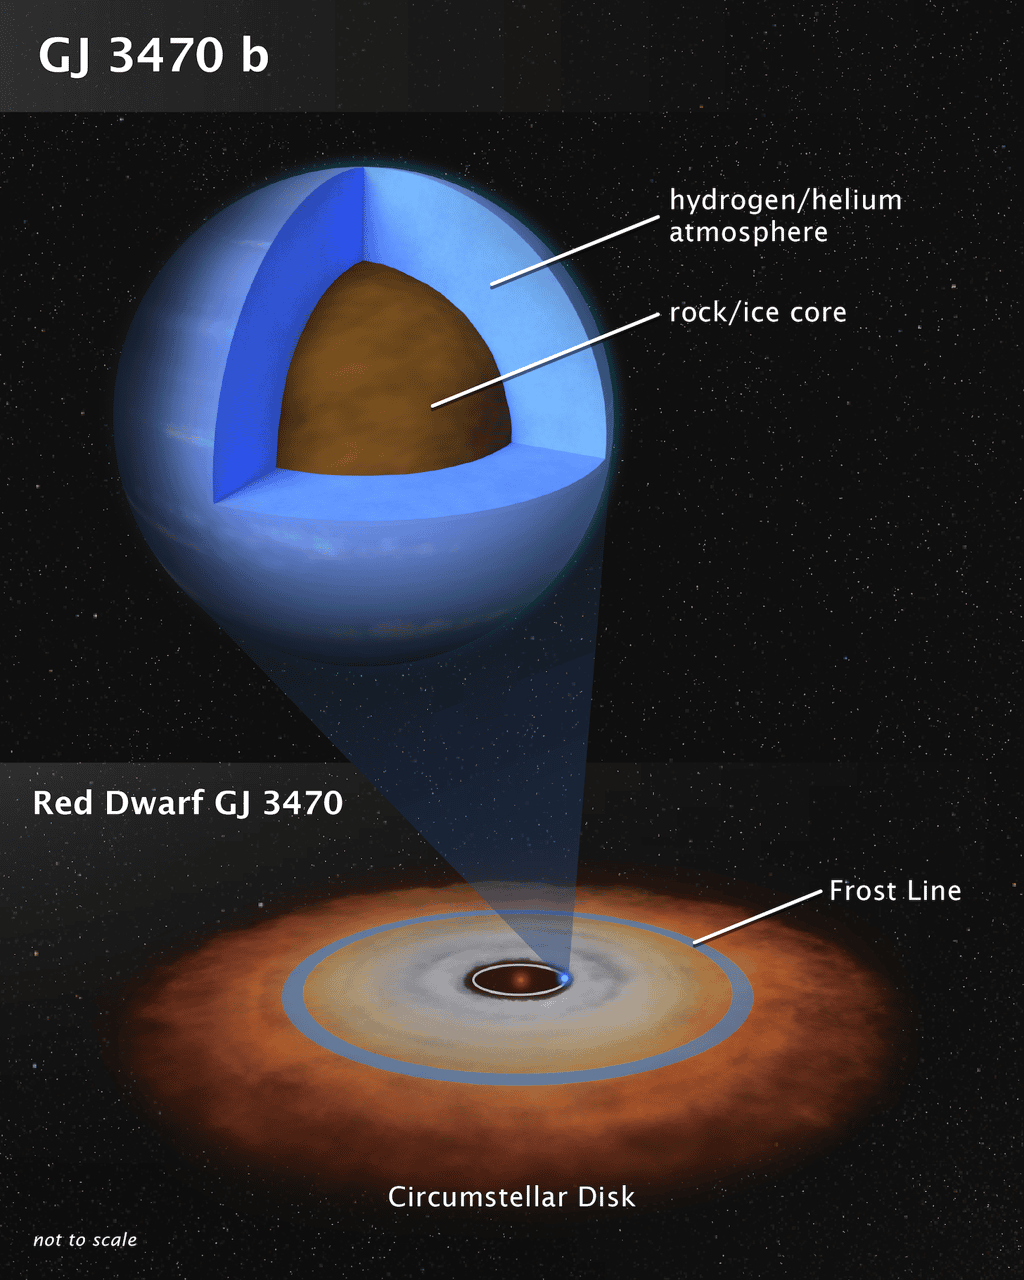 Comme le montre cette vue d’artiste — qui n’est pas à l’échelle —, la planète GJ 3470 b ne ressemble à aucune planète de notre Système solaire. Pesant 12,6 masses terrestres, elle pourrait s’être formée près de son étoile naine rouge comme un objet rocheux et avoir ensuite aspiré à elle, de l’hydrogène et de l’hélium du disque protoplanétaire. Notez que la « <em>frost line </em>» marque la limite théorique entre les planètes telluriques et les planètes gazeuses. © L. Hustak, Nasa, Esa